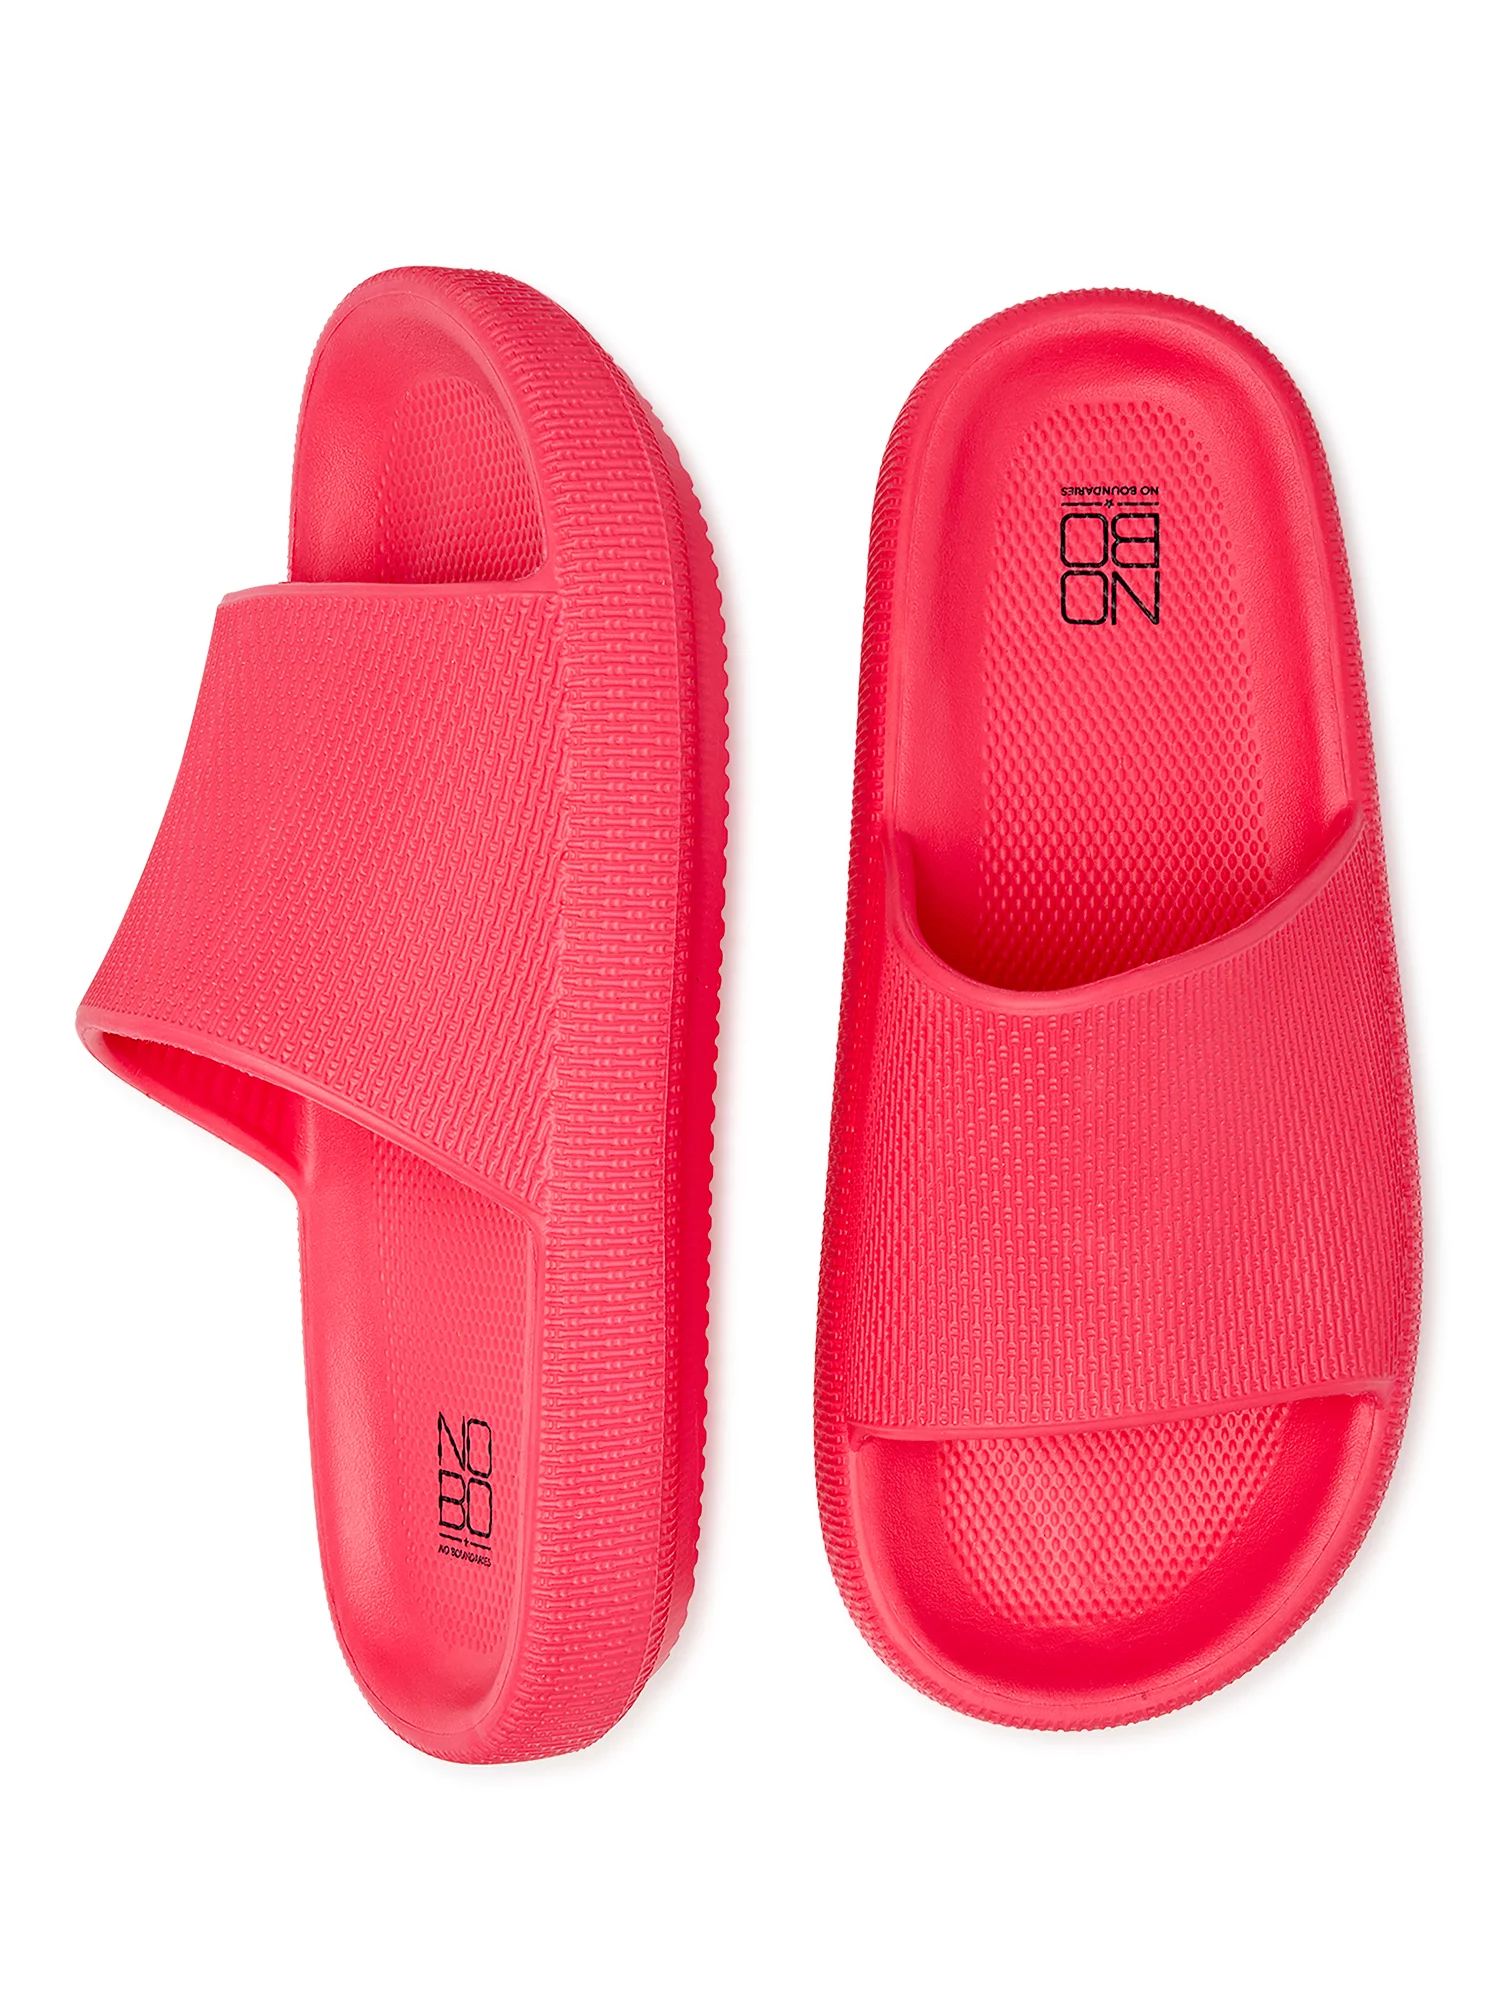 No Boundaries Women's Comfort Slide Sandals | Walmart (US)